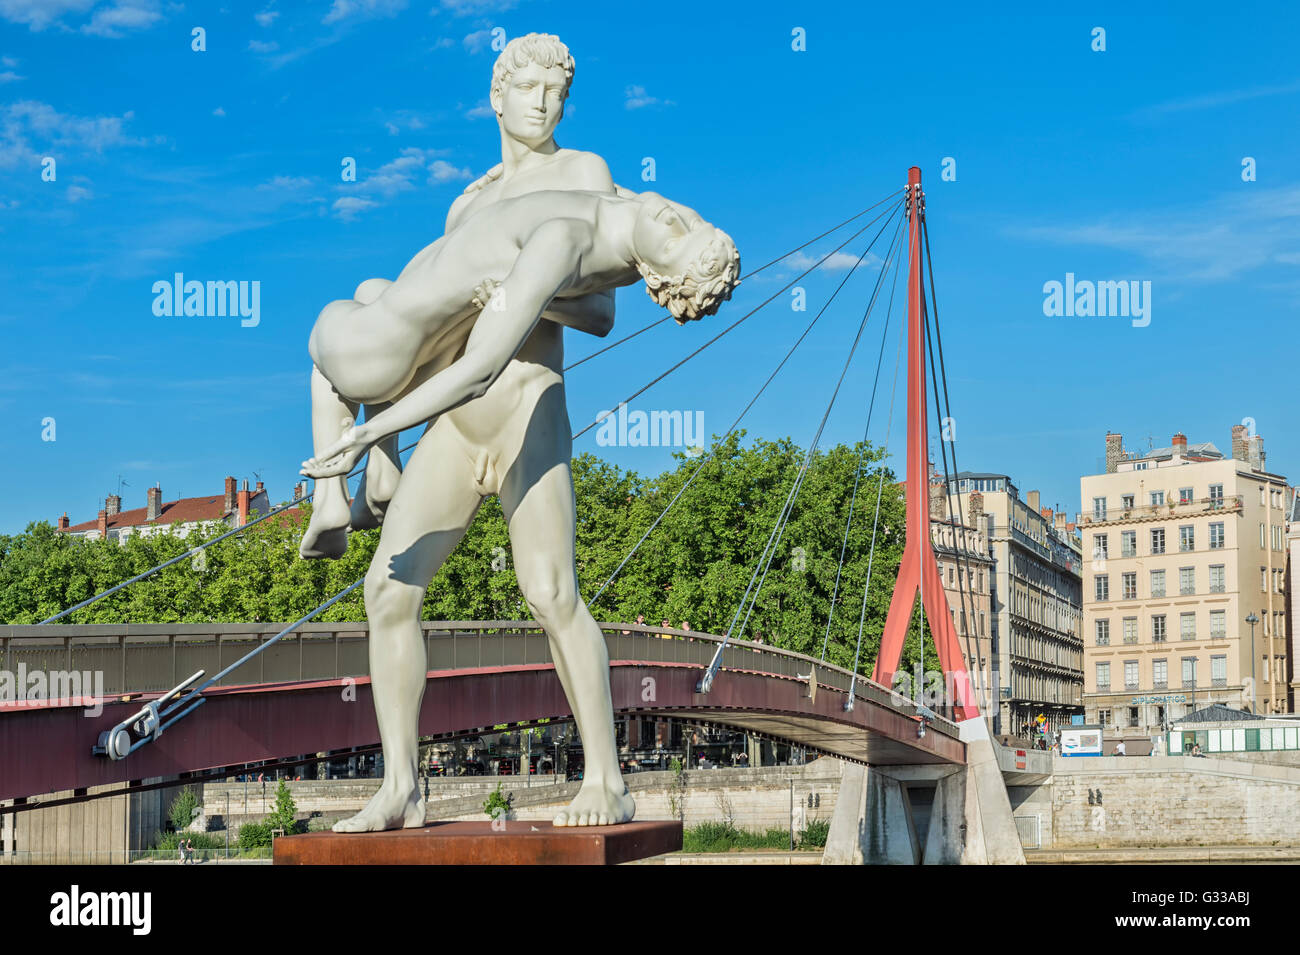 Das Gewicht von Oneself Statue auf der Saone Banken in der Nähe des Palais de Justice Fußgängerbrücke, Lyon, Rhone, Frankreich Stockfoto